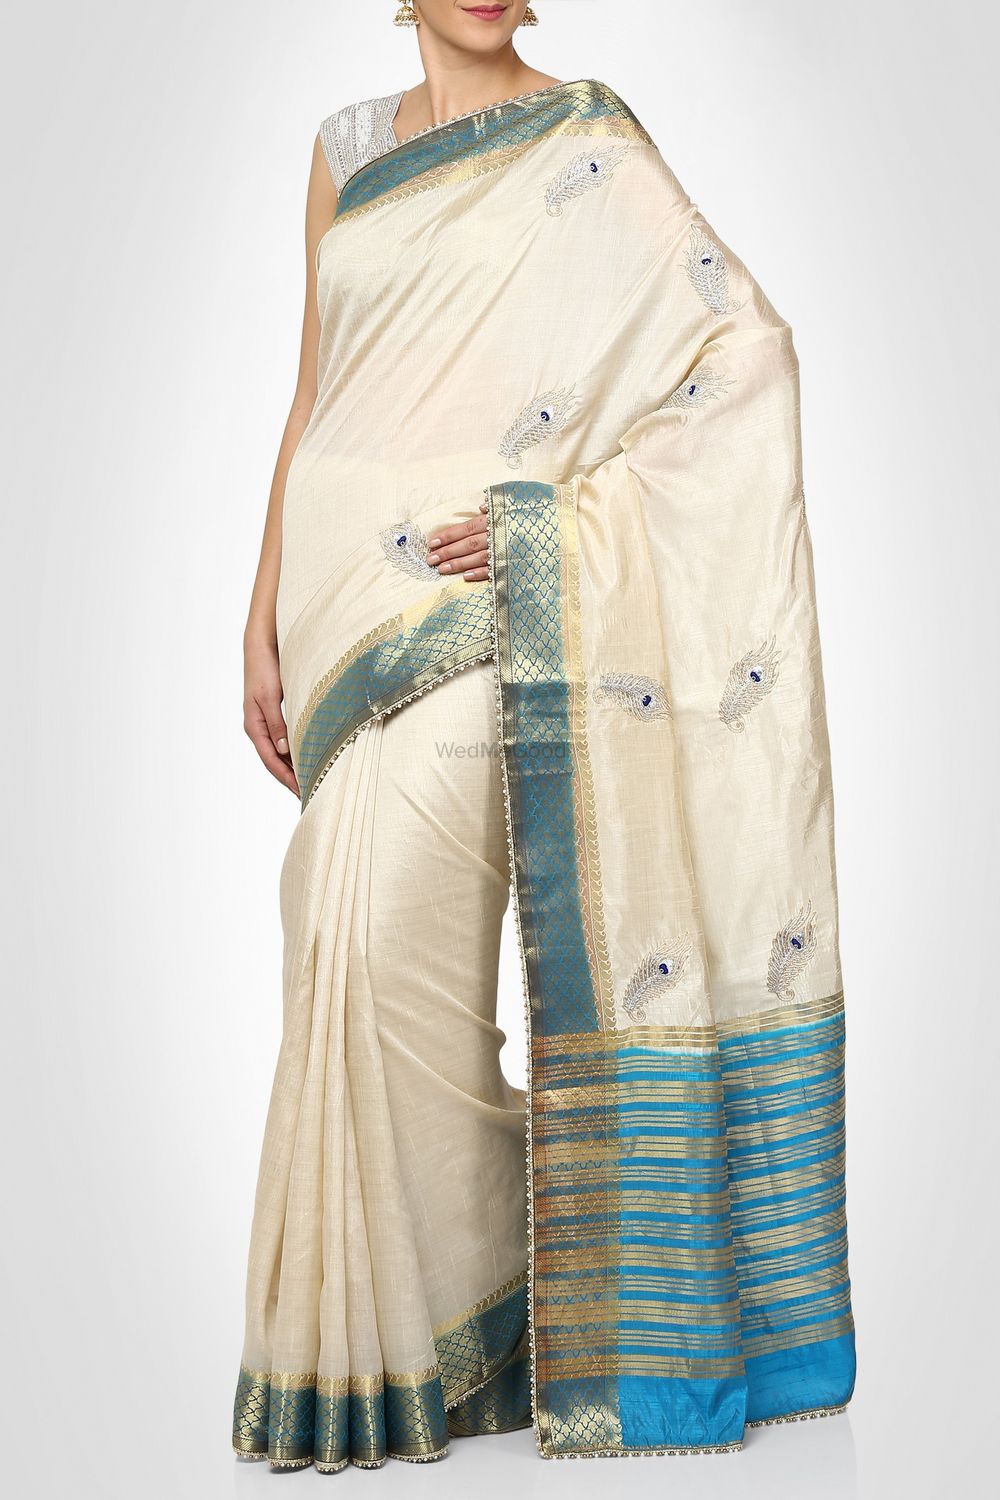 Photo From Indian Saree - By Divya Kanakia Clothing